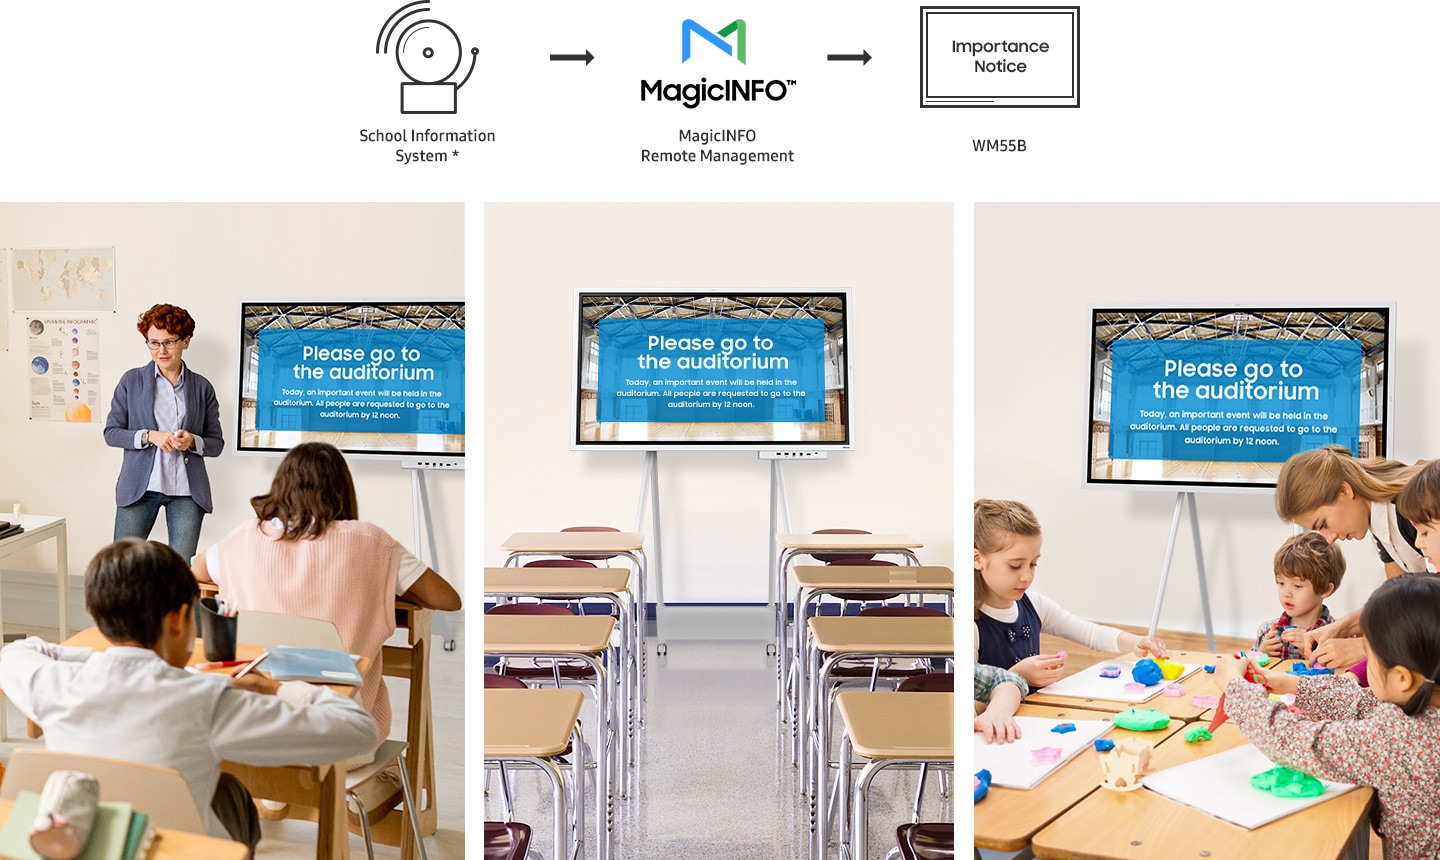 Sistemul informatic al școlii* afișează simultan anunțul de importanță pe Flip Pro instalat în diferite săli de clasă prin intermediul managementului de la distanță Magicinfo.